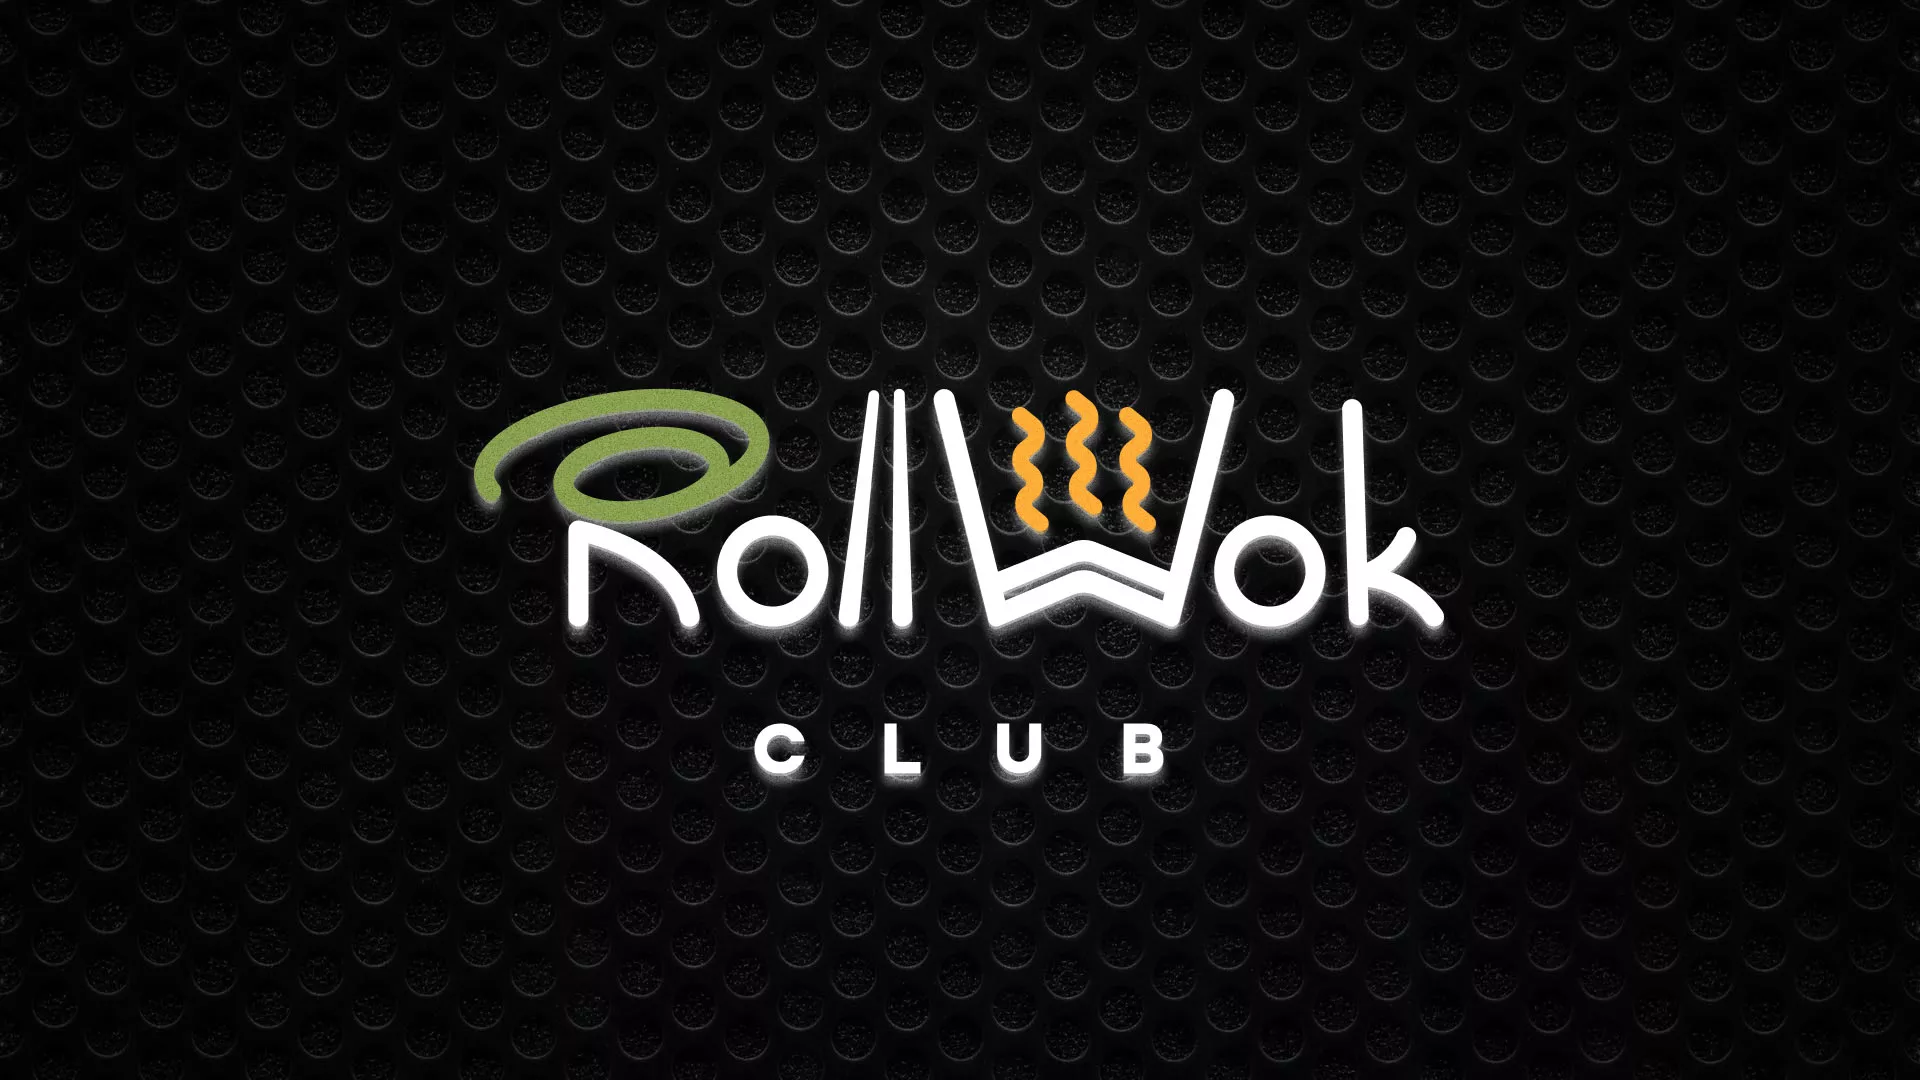 Брендирование торговых точек суши-бара «Roll Wok Club» в Луге